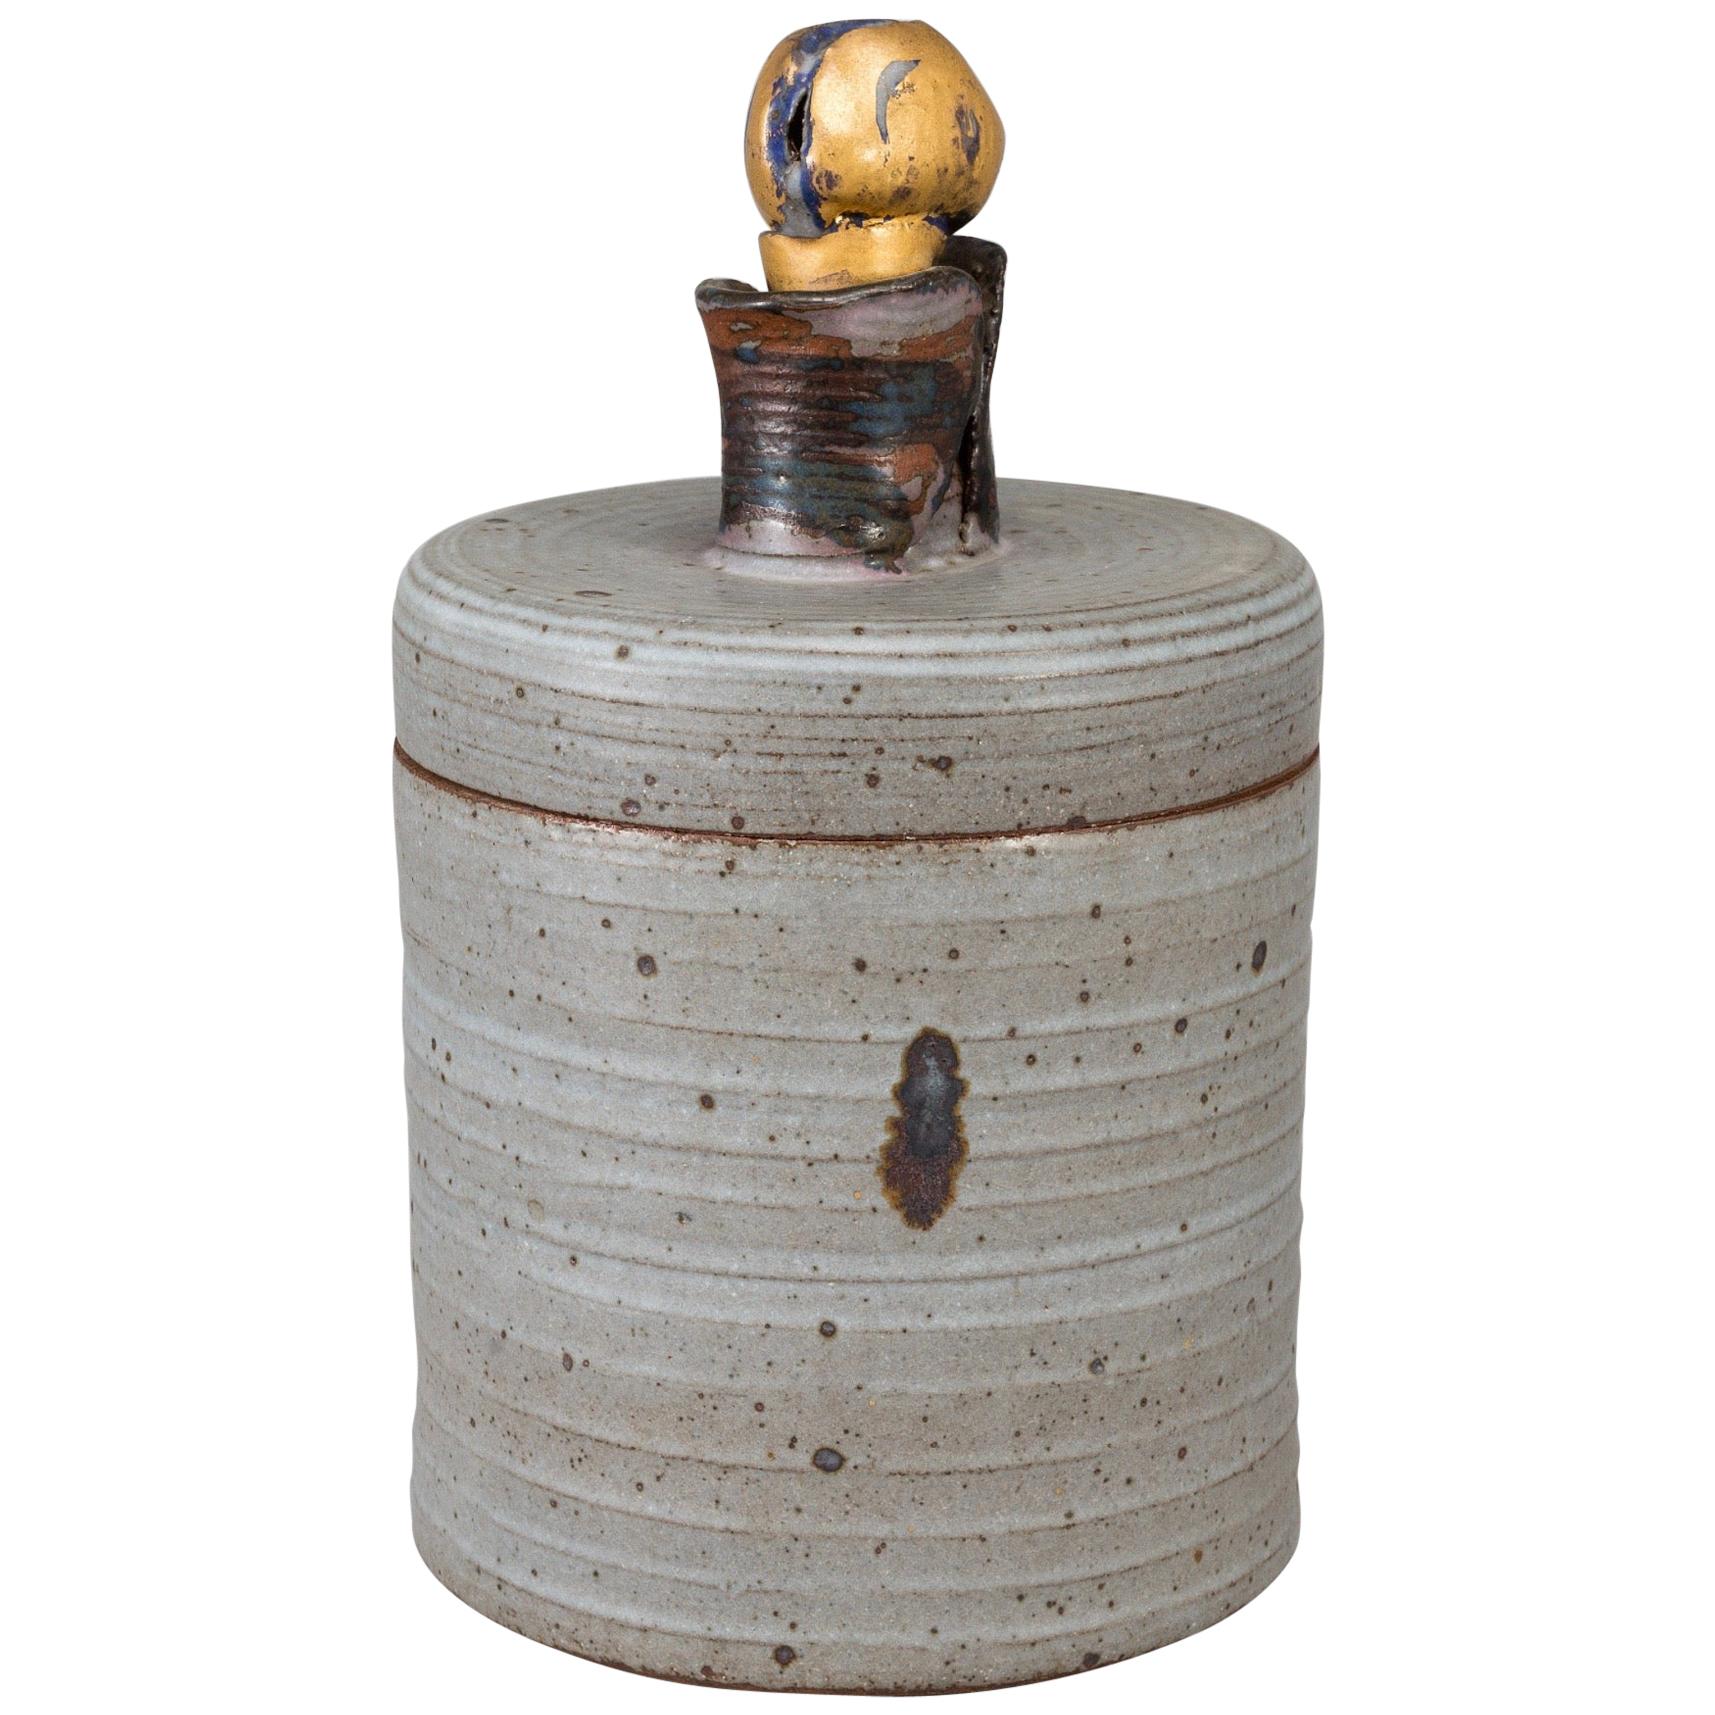 Grand urne en céramique par Lisa Larson Gustavsberg Studio, Suède, 1980, gris dans l'ensemble avec un couvercle et une poignée de forme organique avec différentes couleurs ; le bouton supérieur est bleu et se chevauche en or ; Suède 1980 ; excellent